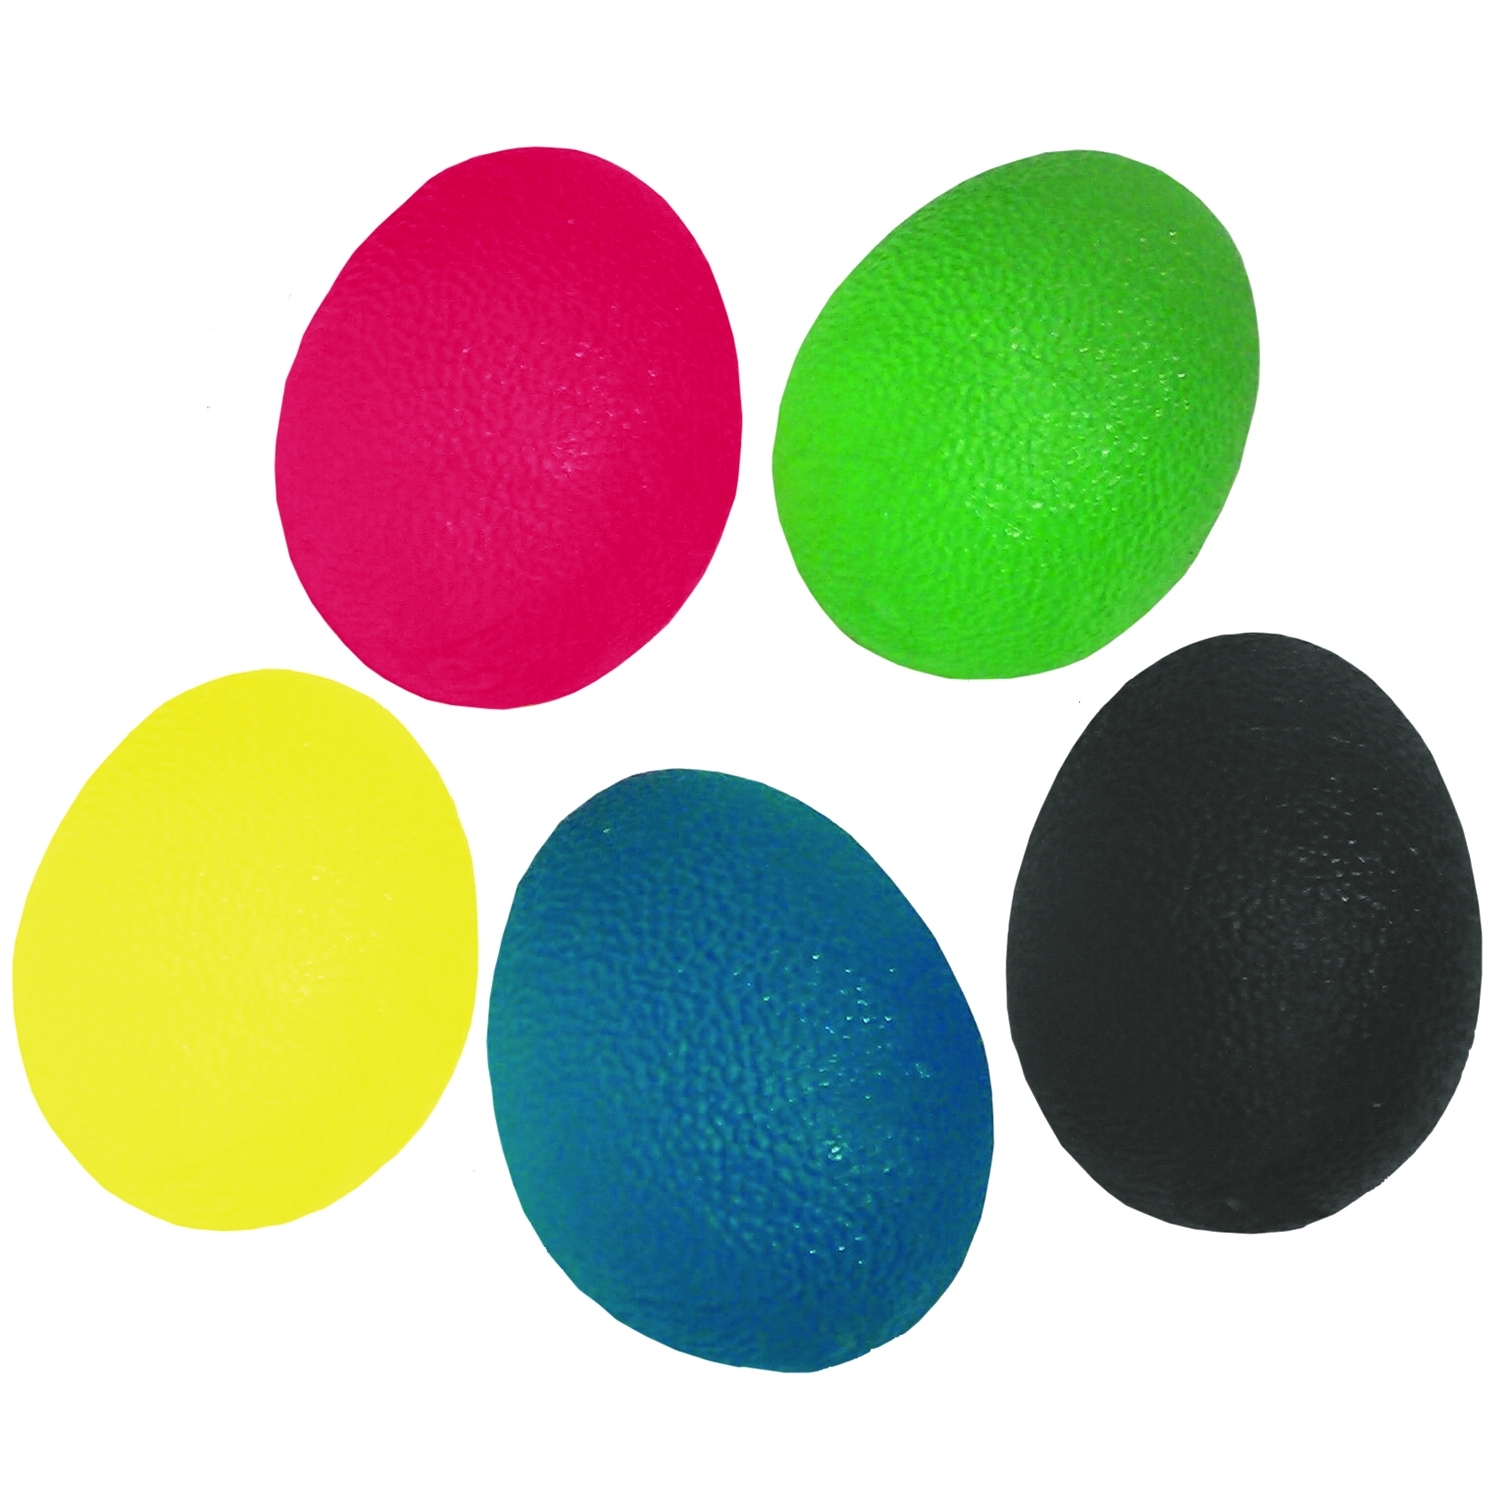 MoVeS handtrainingsbal eivormig - medium - groen